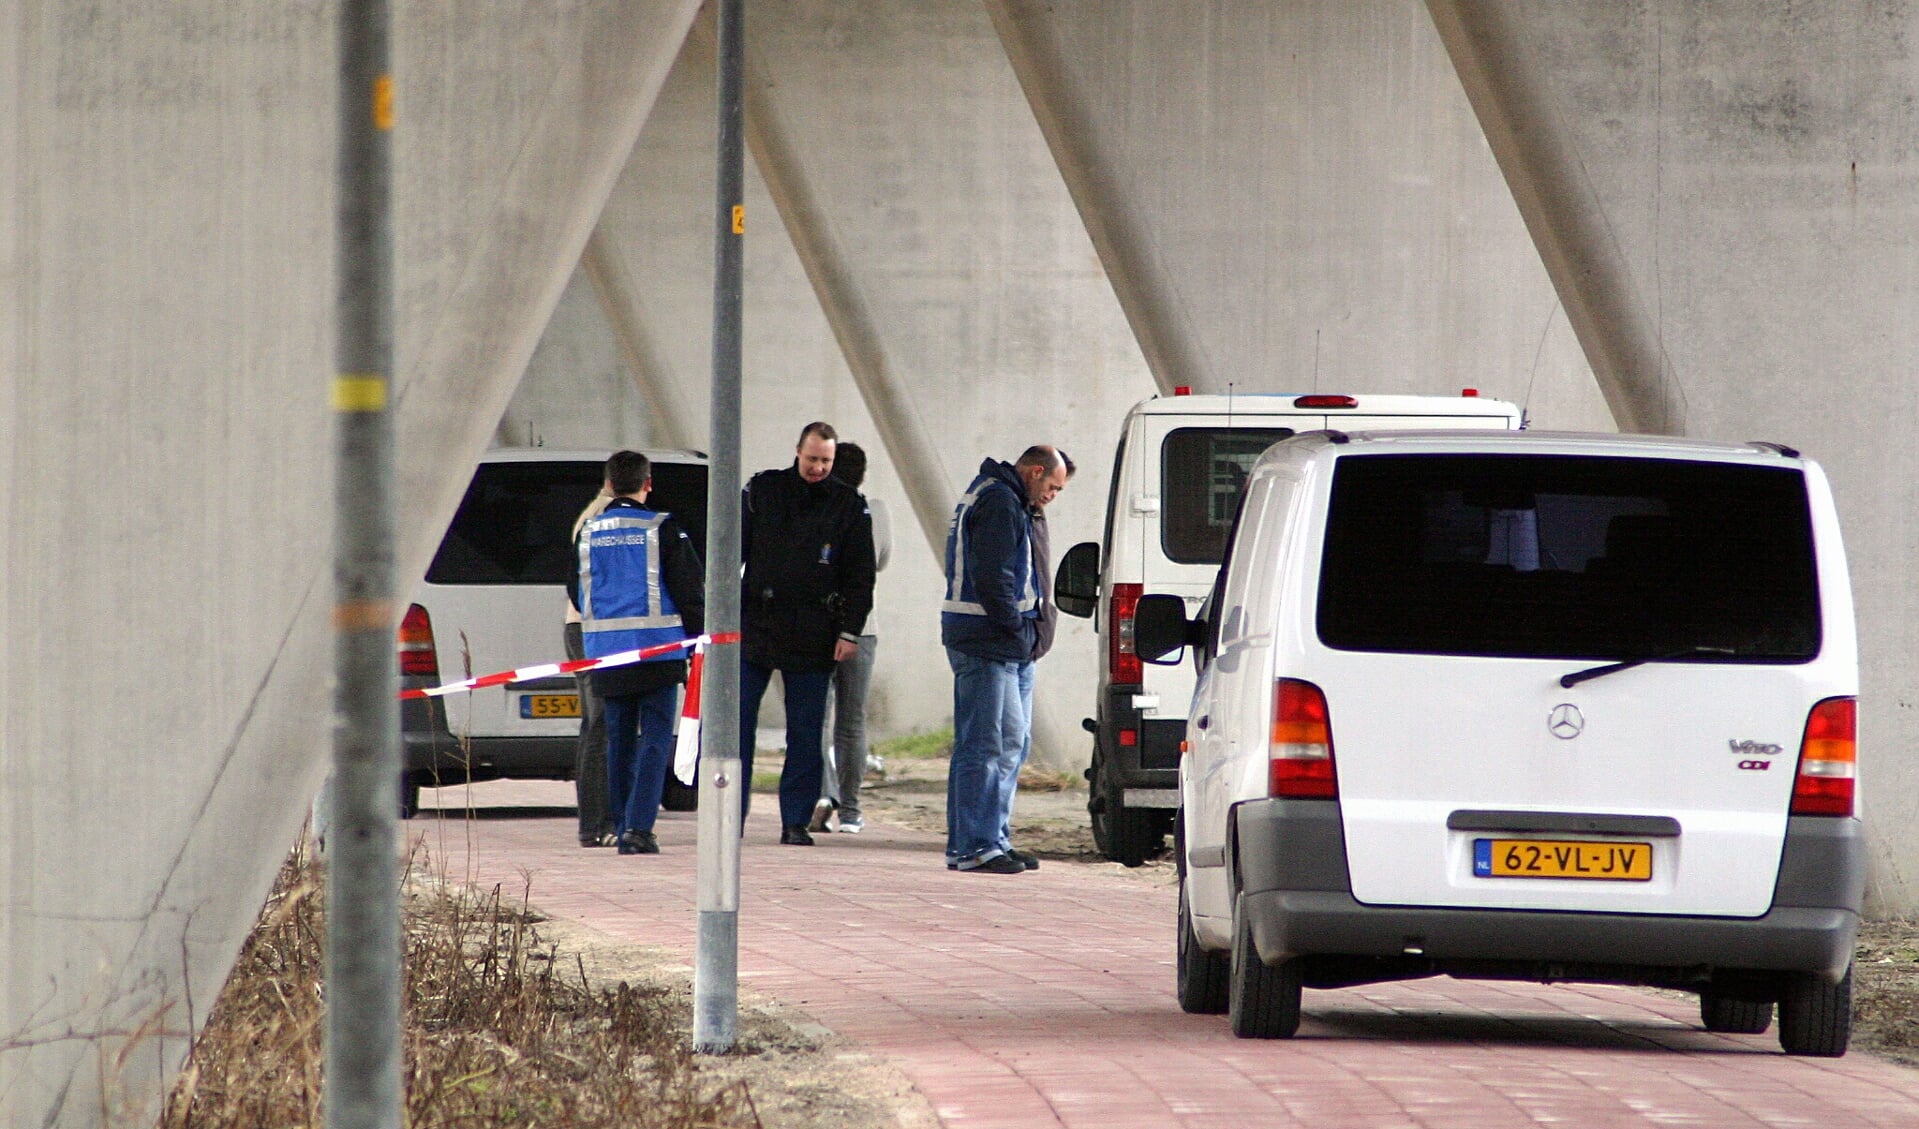 Politie-onderzoek in Hoofddorp naar aanleiding van de diamantroof op Schiphol 